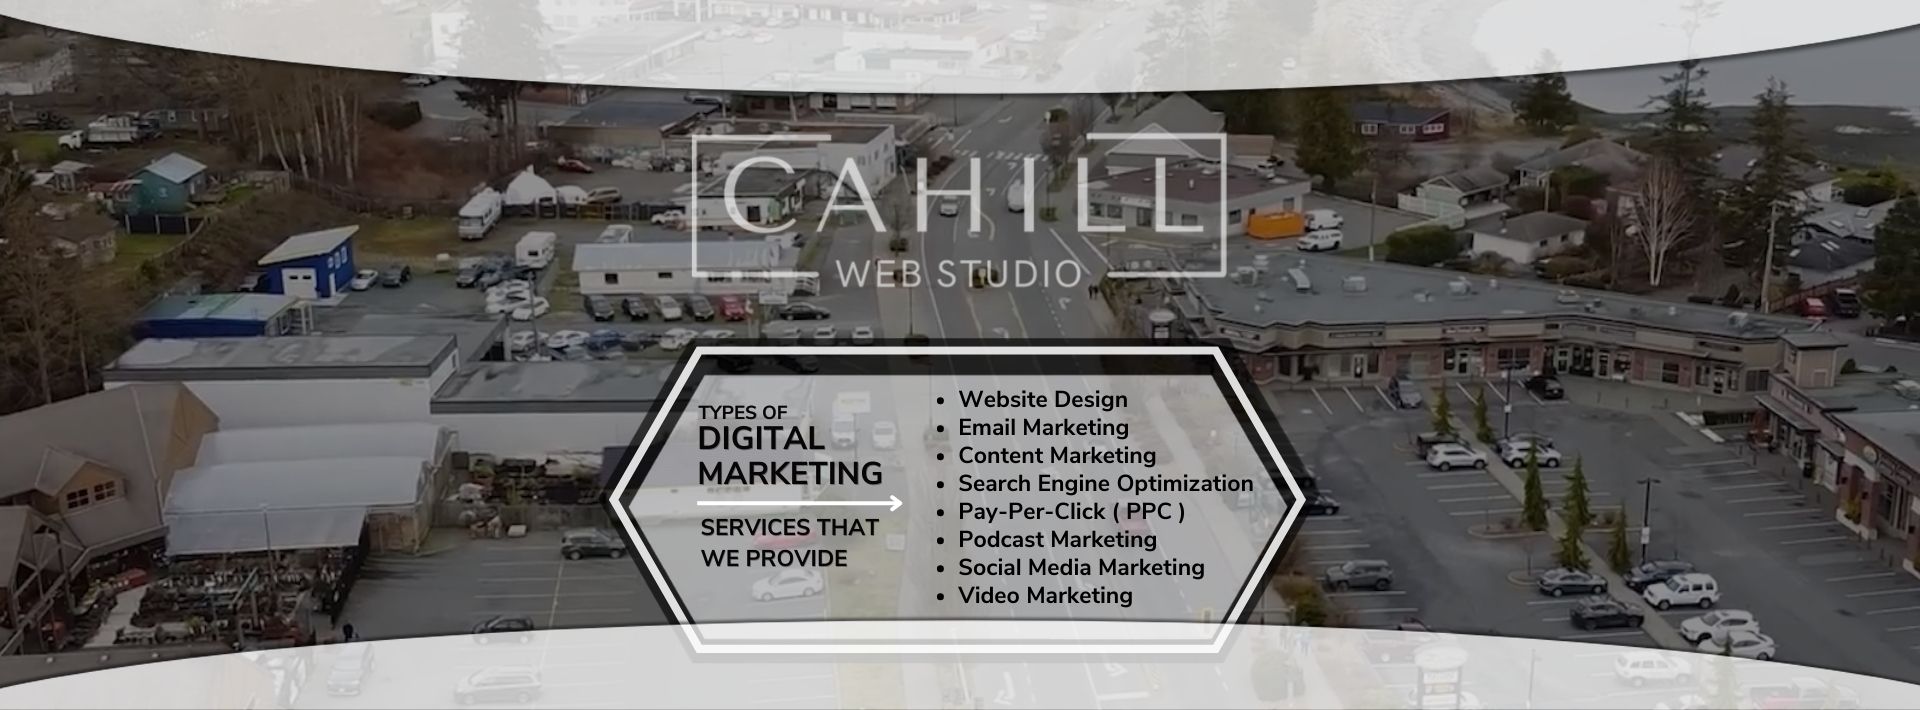 A peek inside Cahill Web Studio